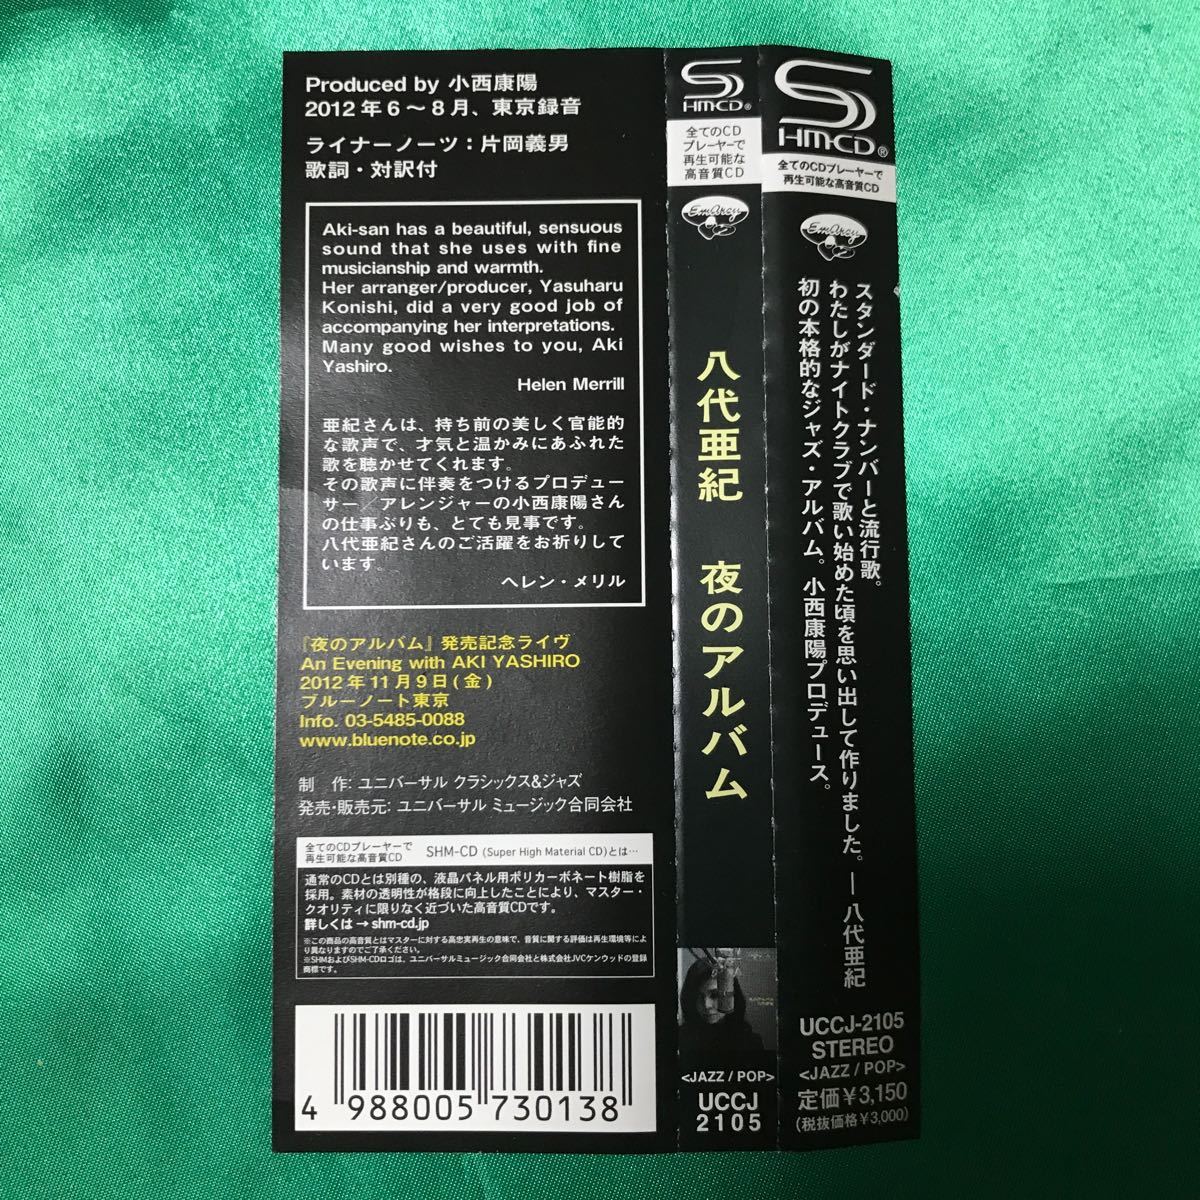 [ obi есть / б/у CD] высококачественный звук SHMCD Aki Yashiro. плата ..[ ночь. альбом ] Jazz * альбом CD